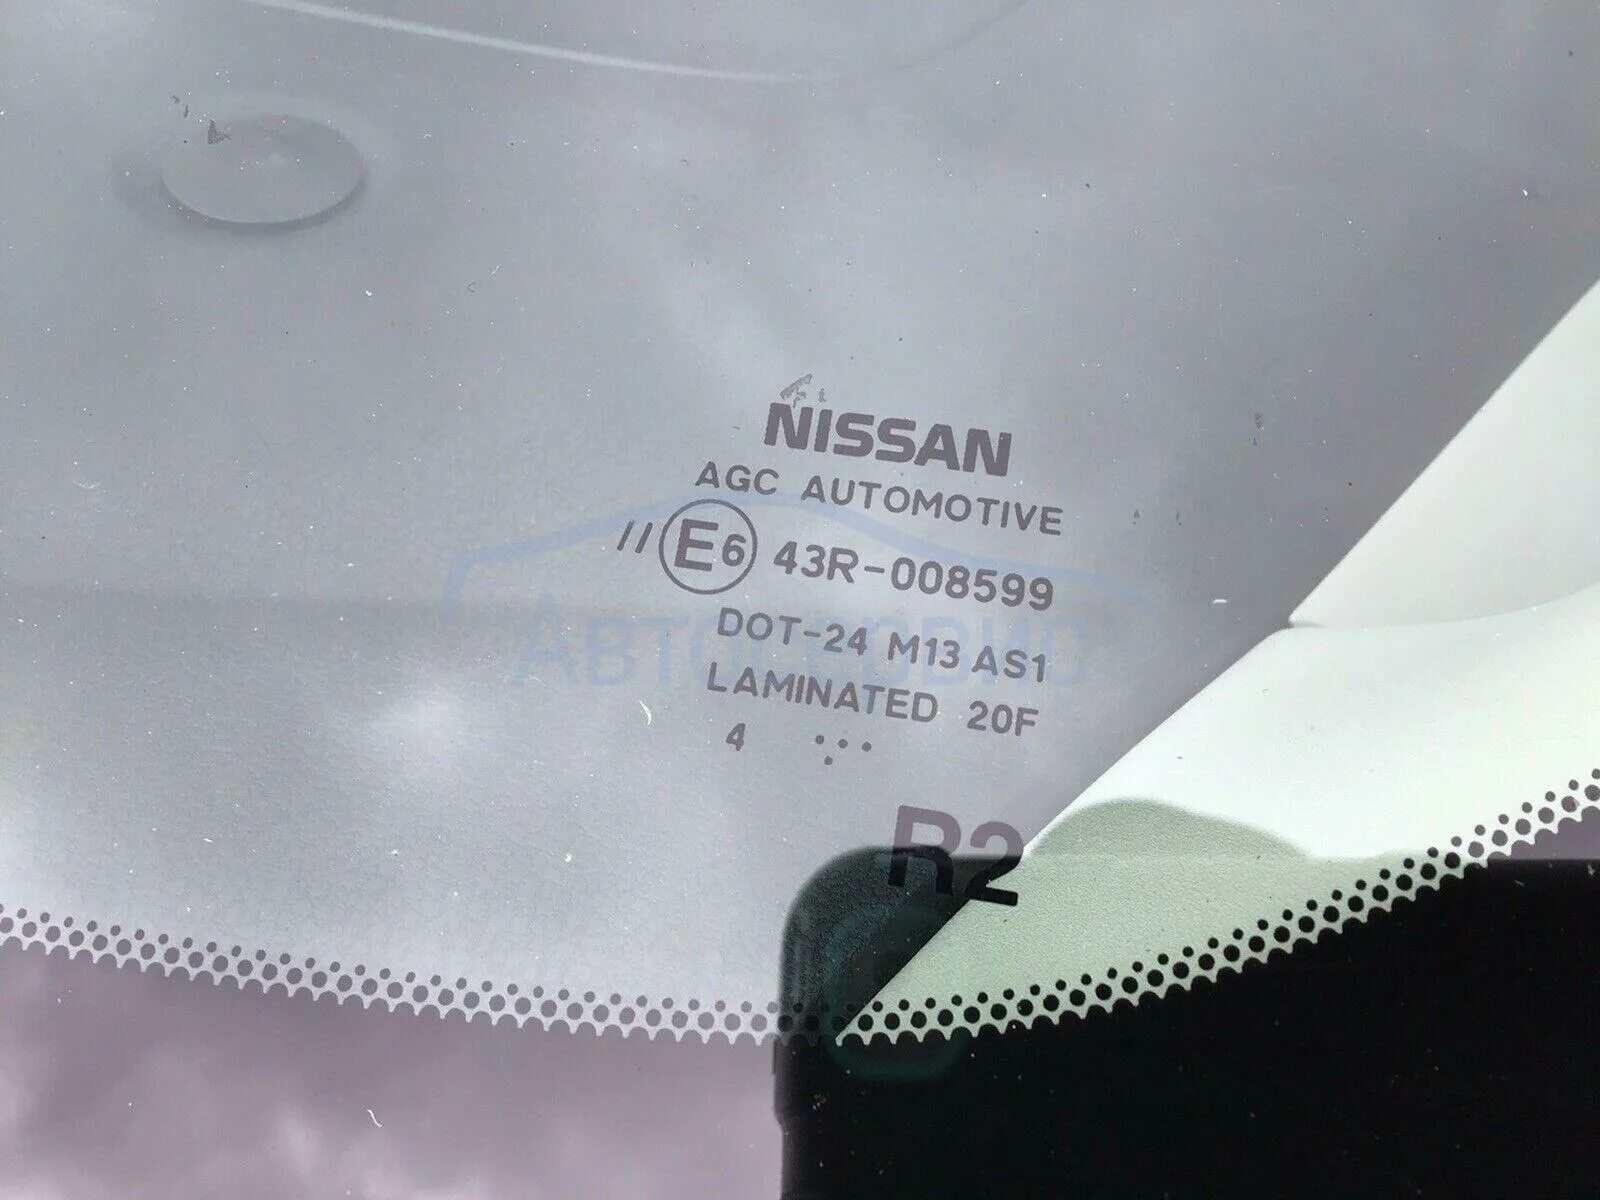 Лобовое стекло Ниссан ноут е11. Лобовое стекло Nissan Note 2015 e6 43r-00015. Nissan Note 2008 лобовое стекло КМК. Размер лобового стекла Ниссан ноут е11.